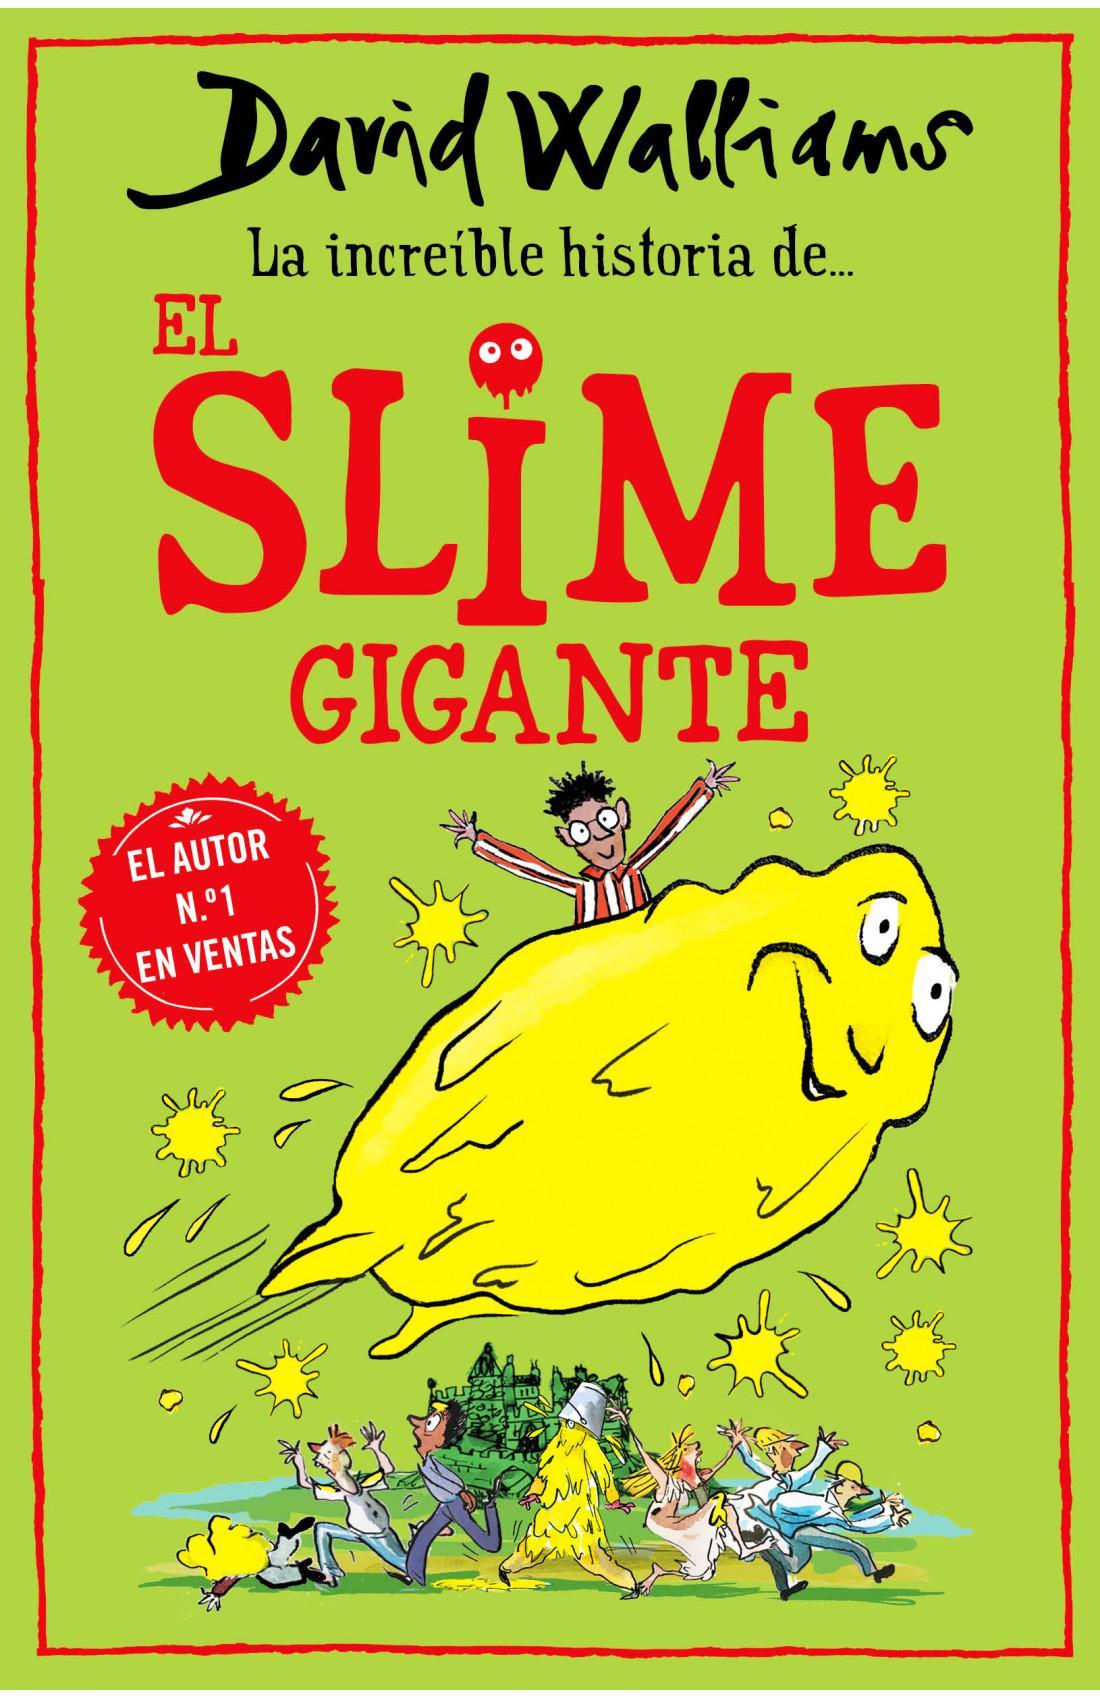 La increible historia de... El slime gigante - David Walliams